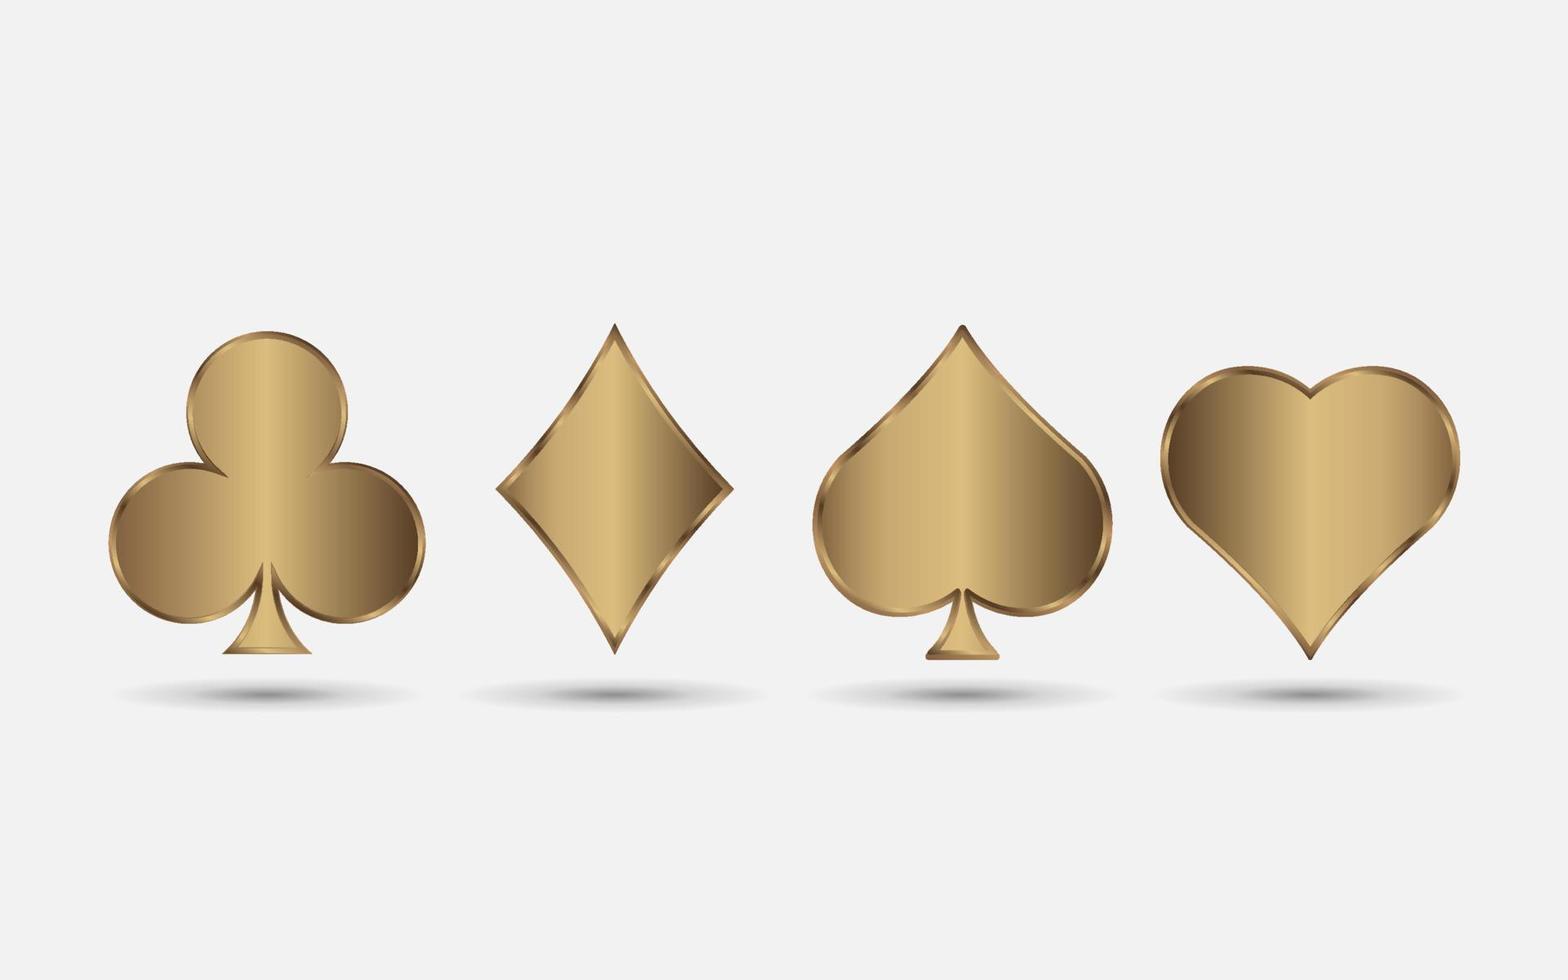 ternos de baralho de ouro, pá, coração, clube e diamante vetor definido para seu design ou logotipo. cartas de baralho realistas isoladas no fundo branco